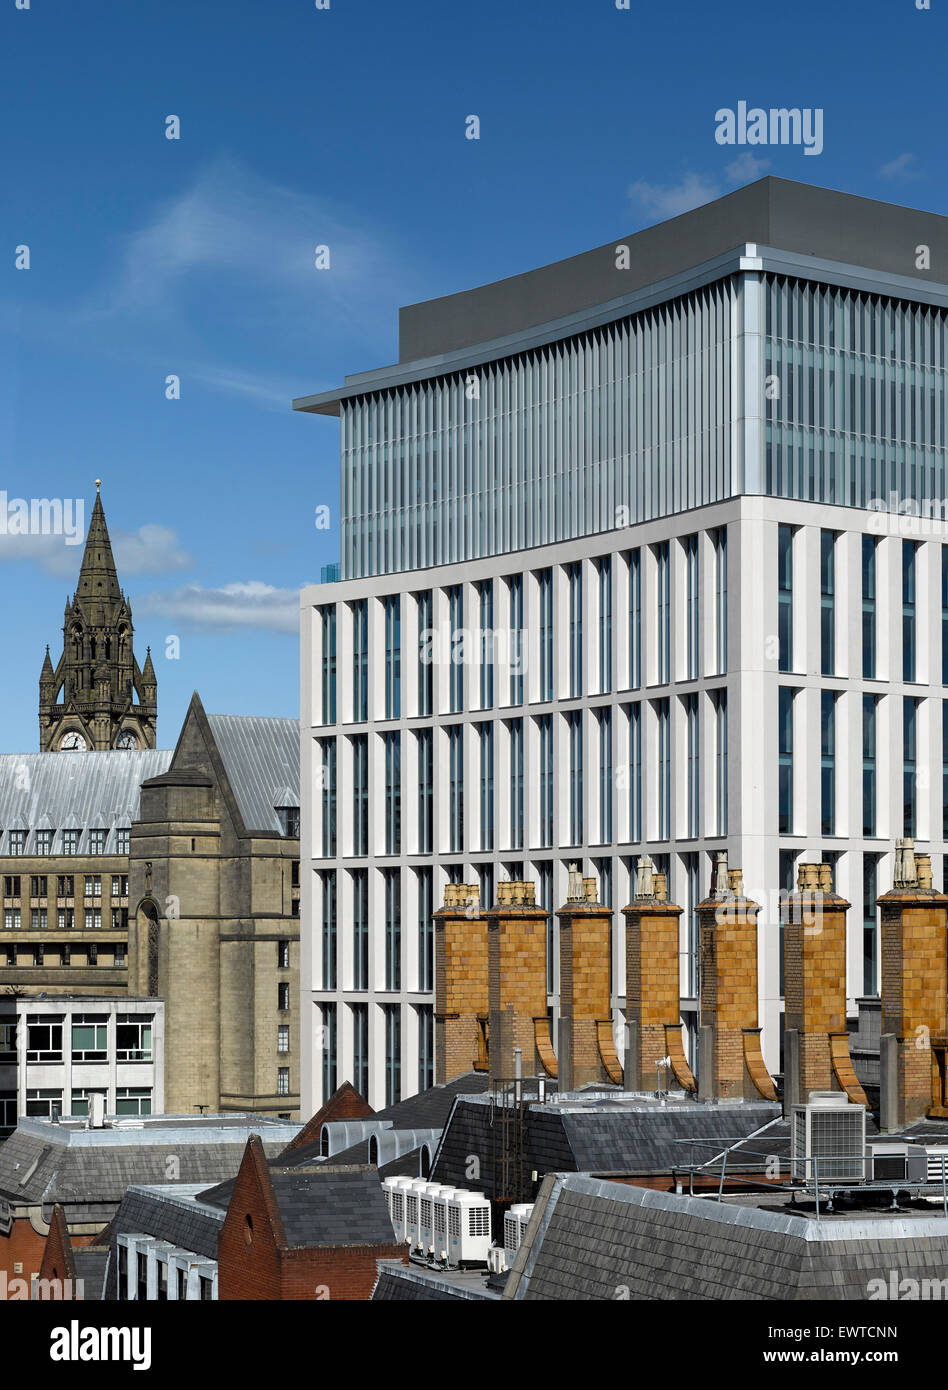 Ver elevados a través de las chimeneas. Una plaza de San Pedro, en Manchester, Reino Unido. Arquitecto: Glenn Howells Architects, 2015. Foto de stock